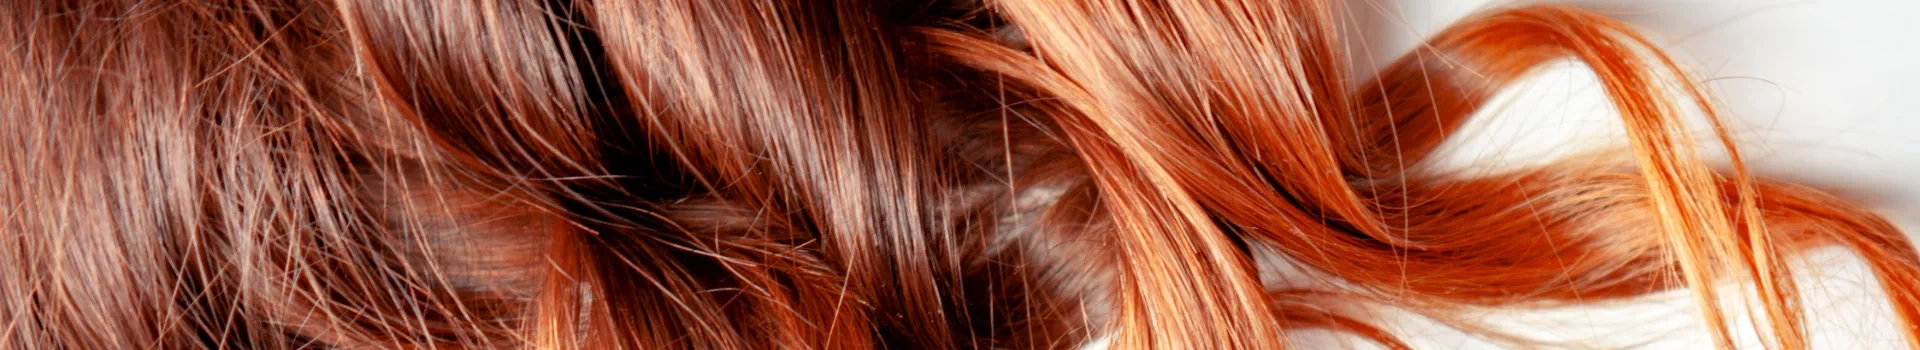 kręcone rude włosy